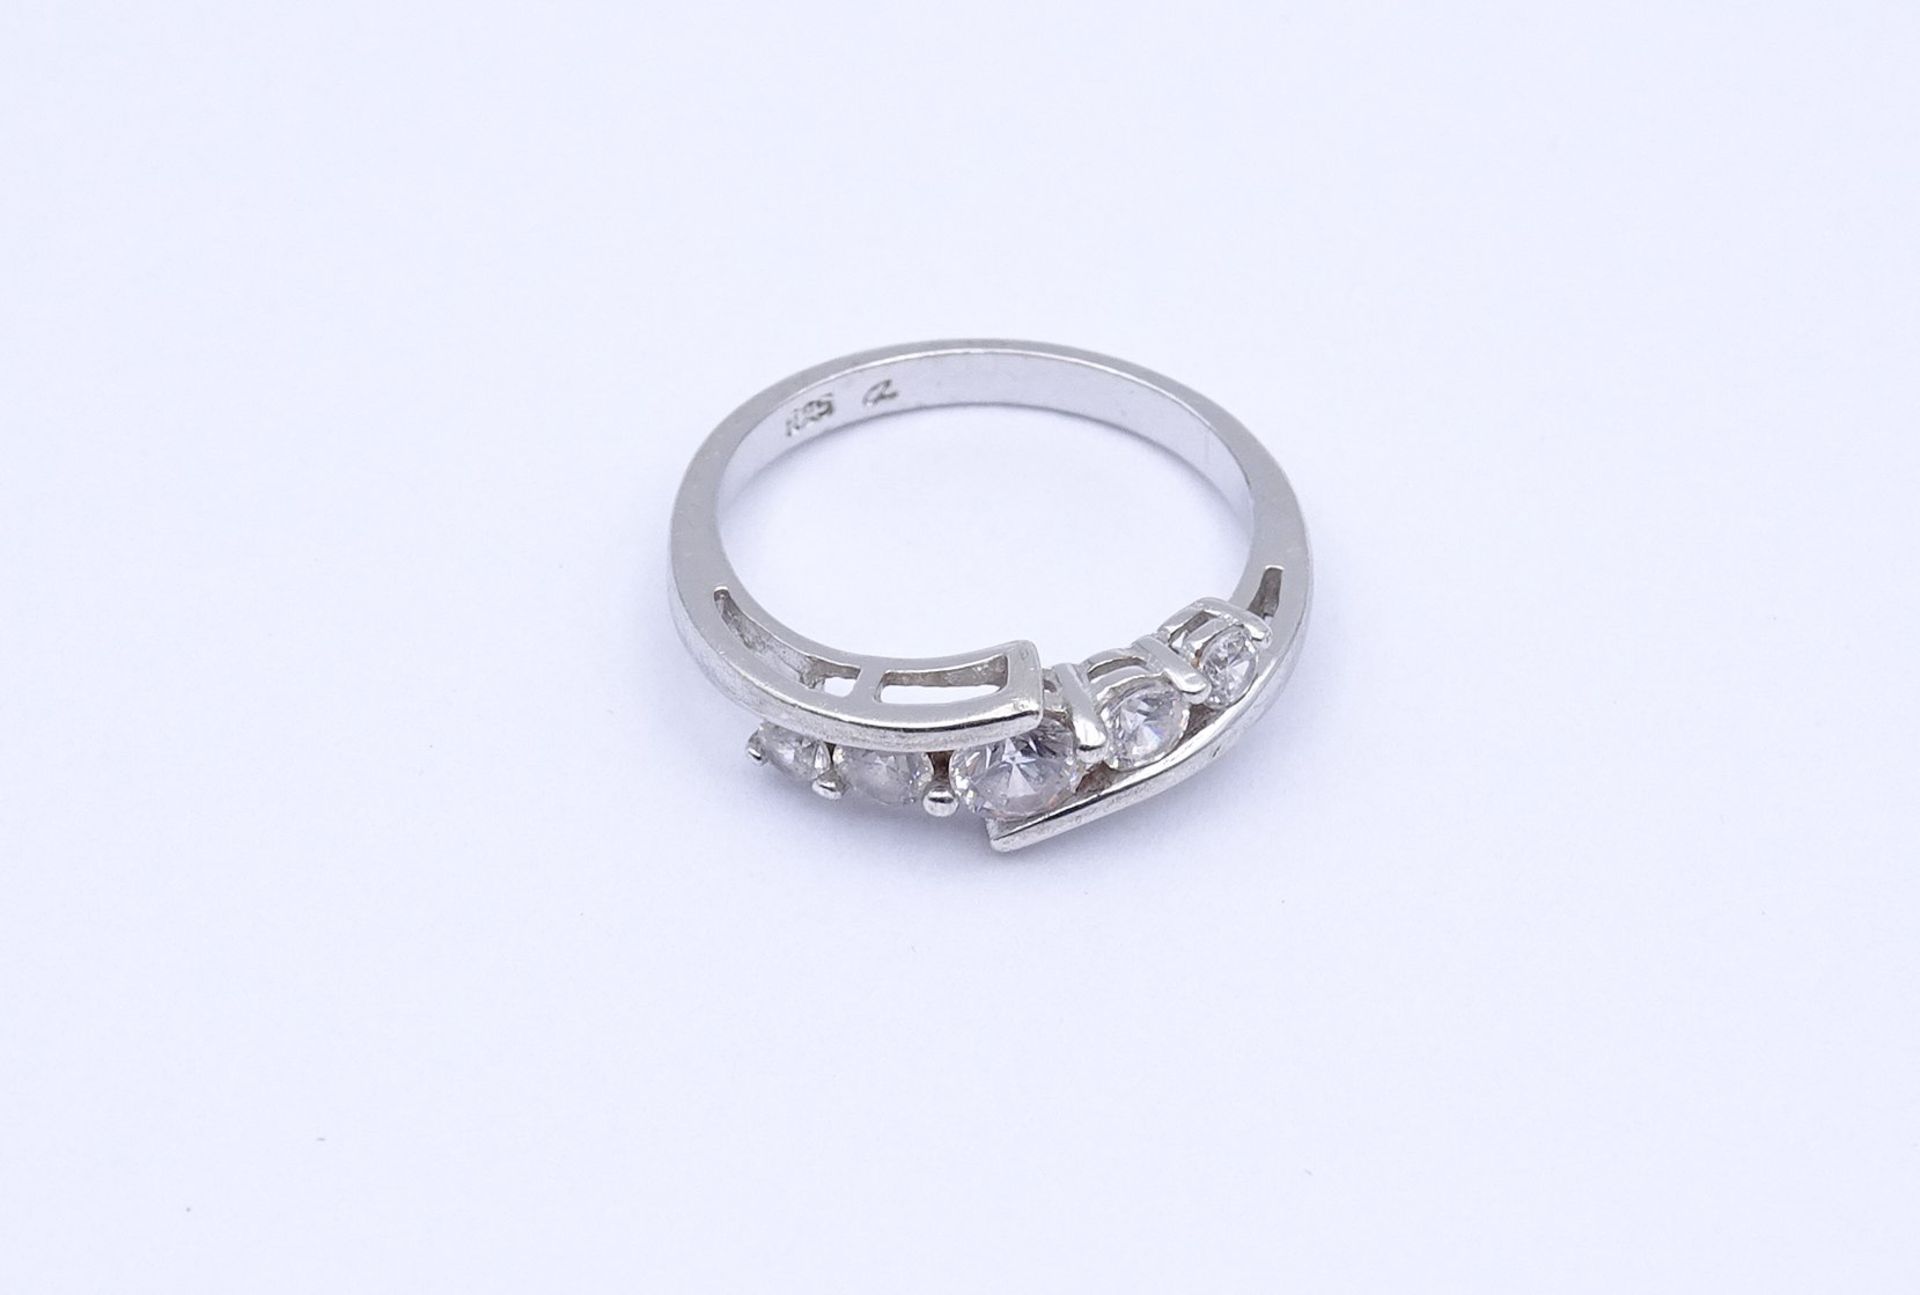 925er Silber Ring mit 5 rund facc. klaren Steinen, 1,99g., RG 50 - Image 2 of 3